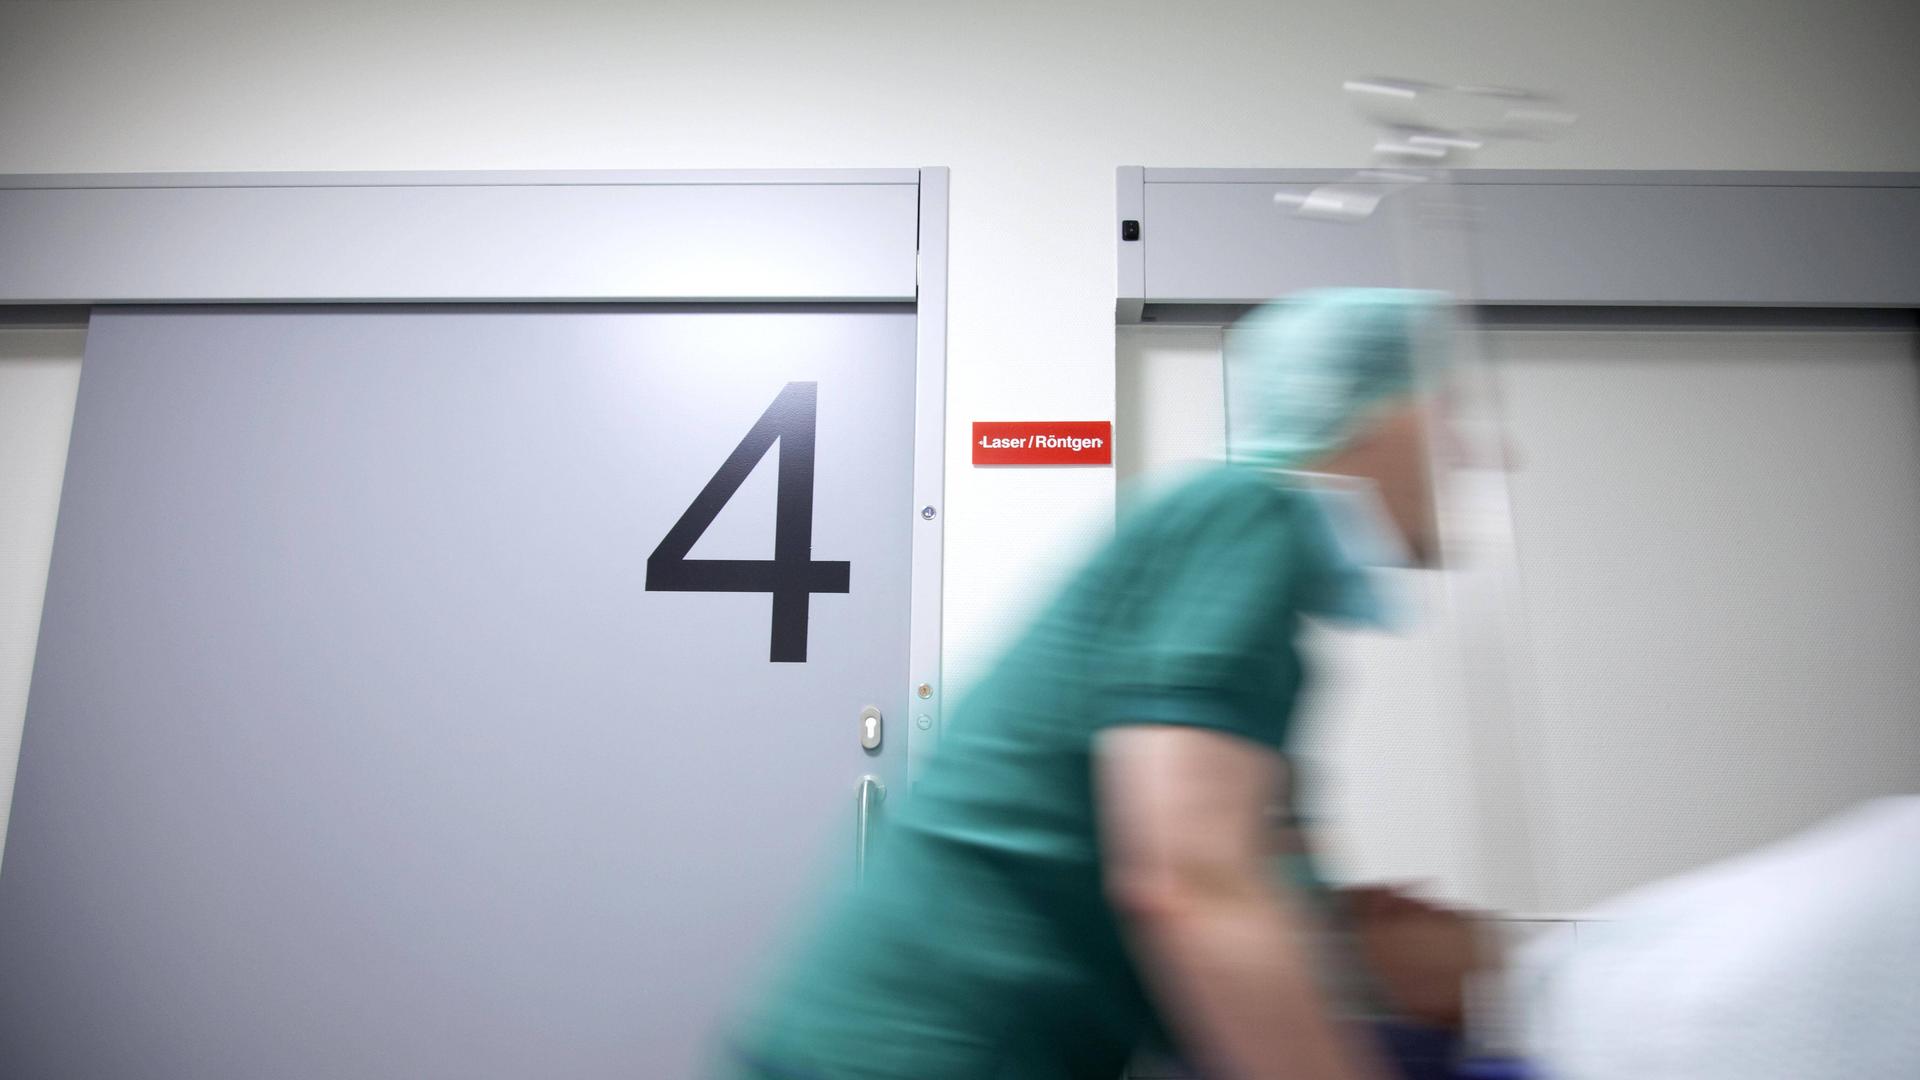 Ein Patient im Bett wird über einen Gang geschoben, im Hintergrund ist eine Tür zum Operationssaal zu sehen.